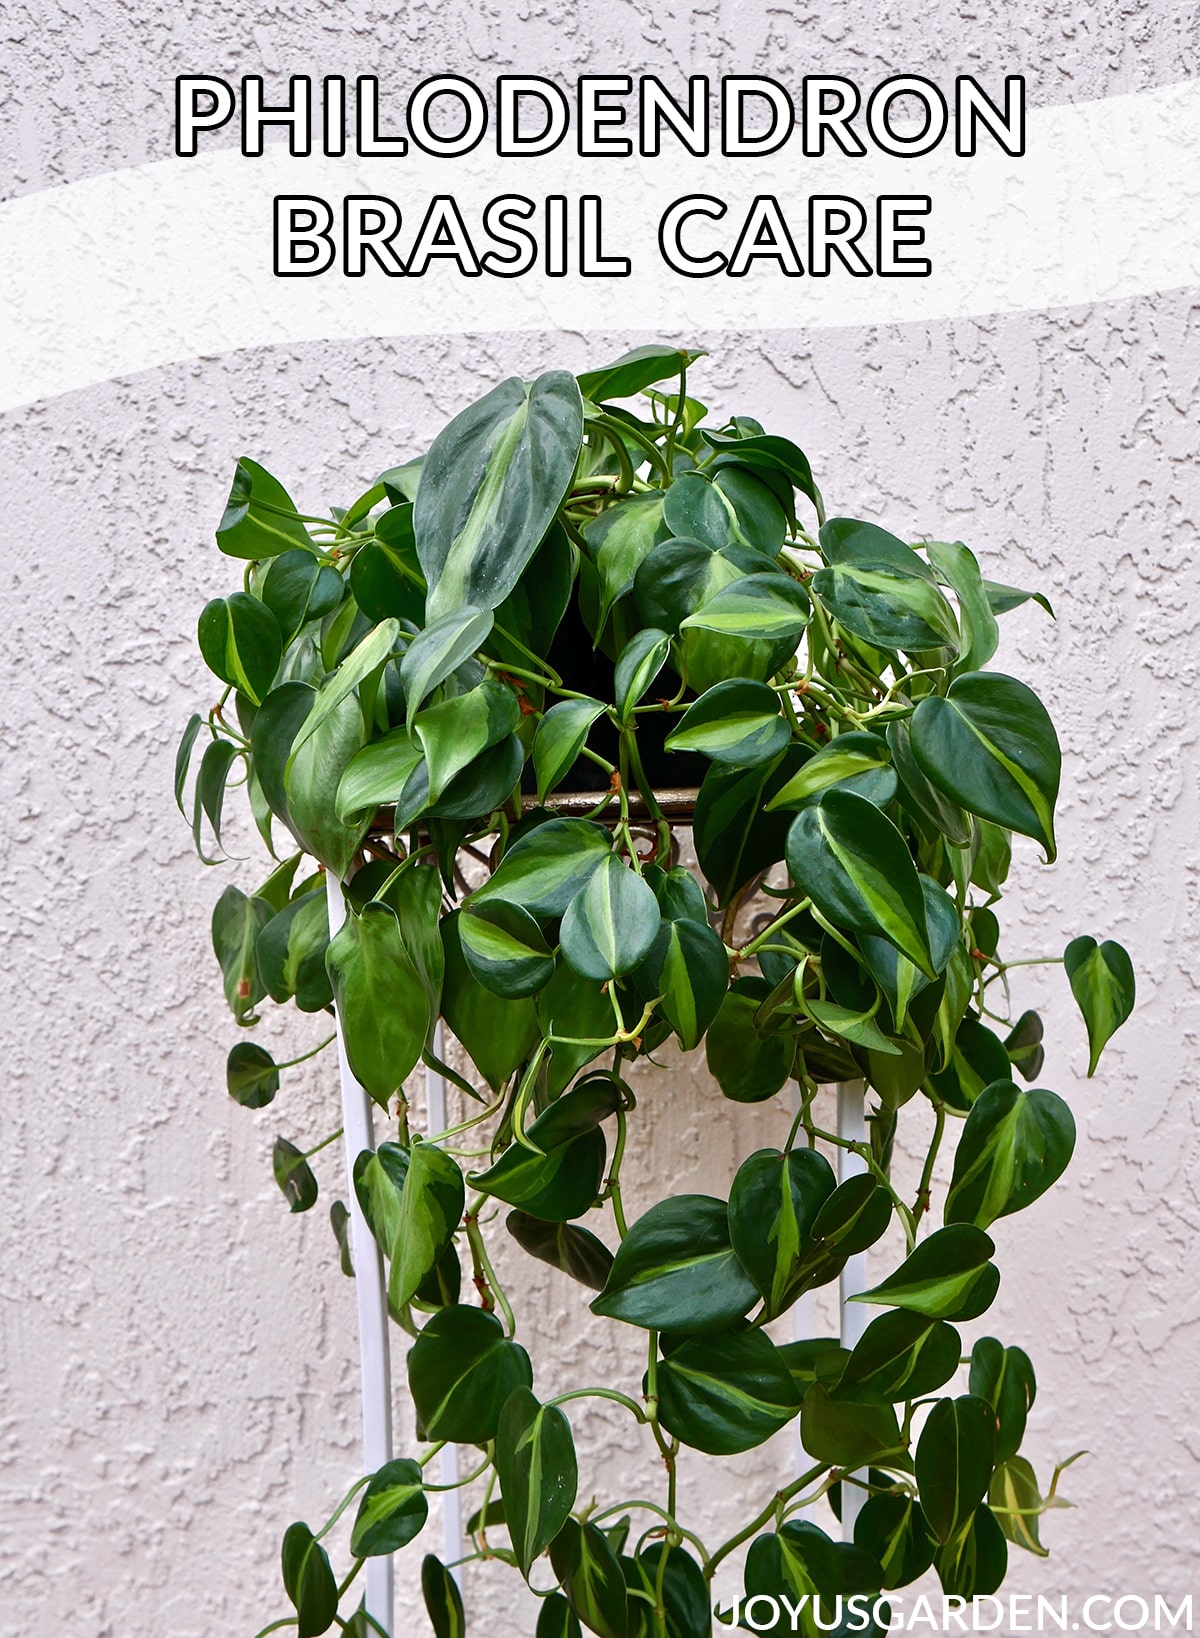  Уход за филодендроном бразильским: простое в уходе комнатное растение